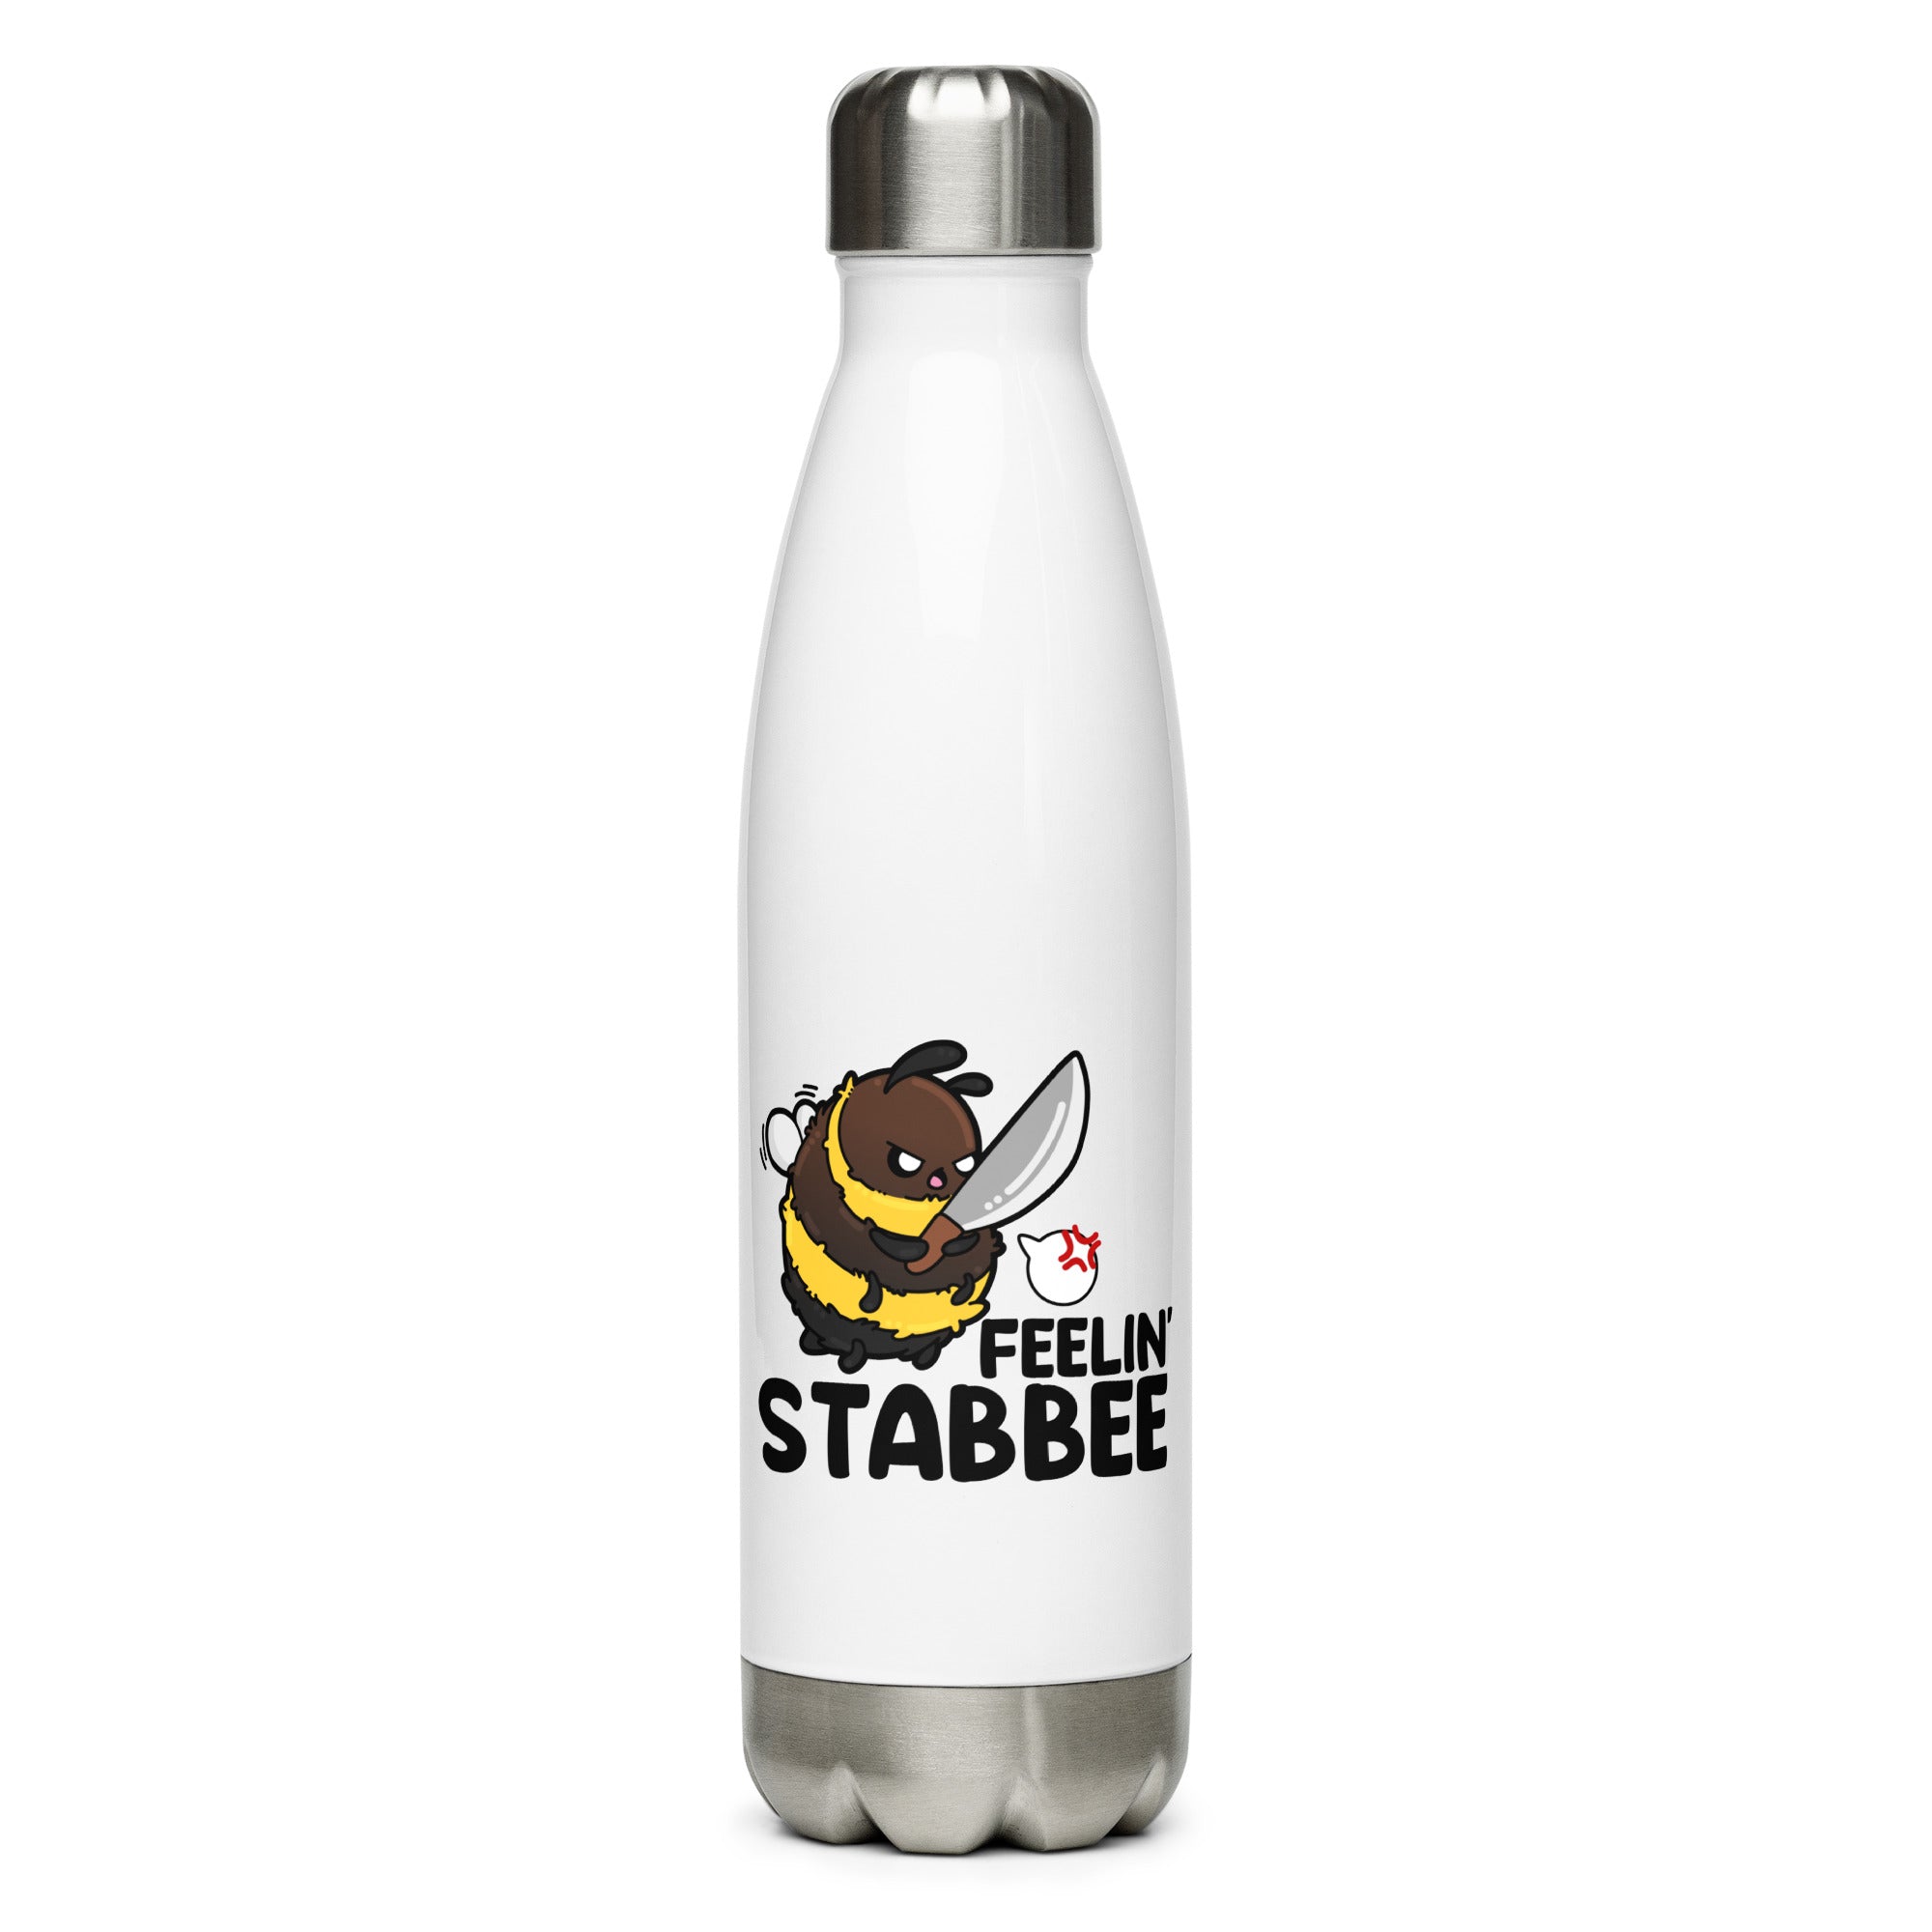 FEELIN STABBEE - Stainless Steel Water Bottle - ChubbleGumLLC